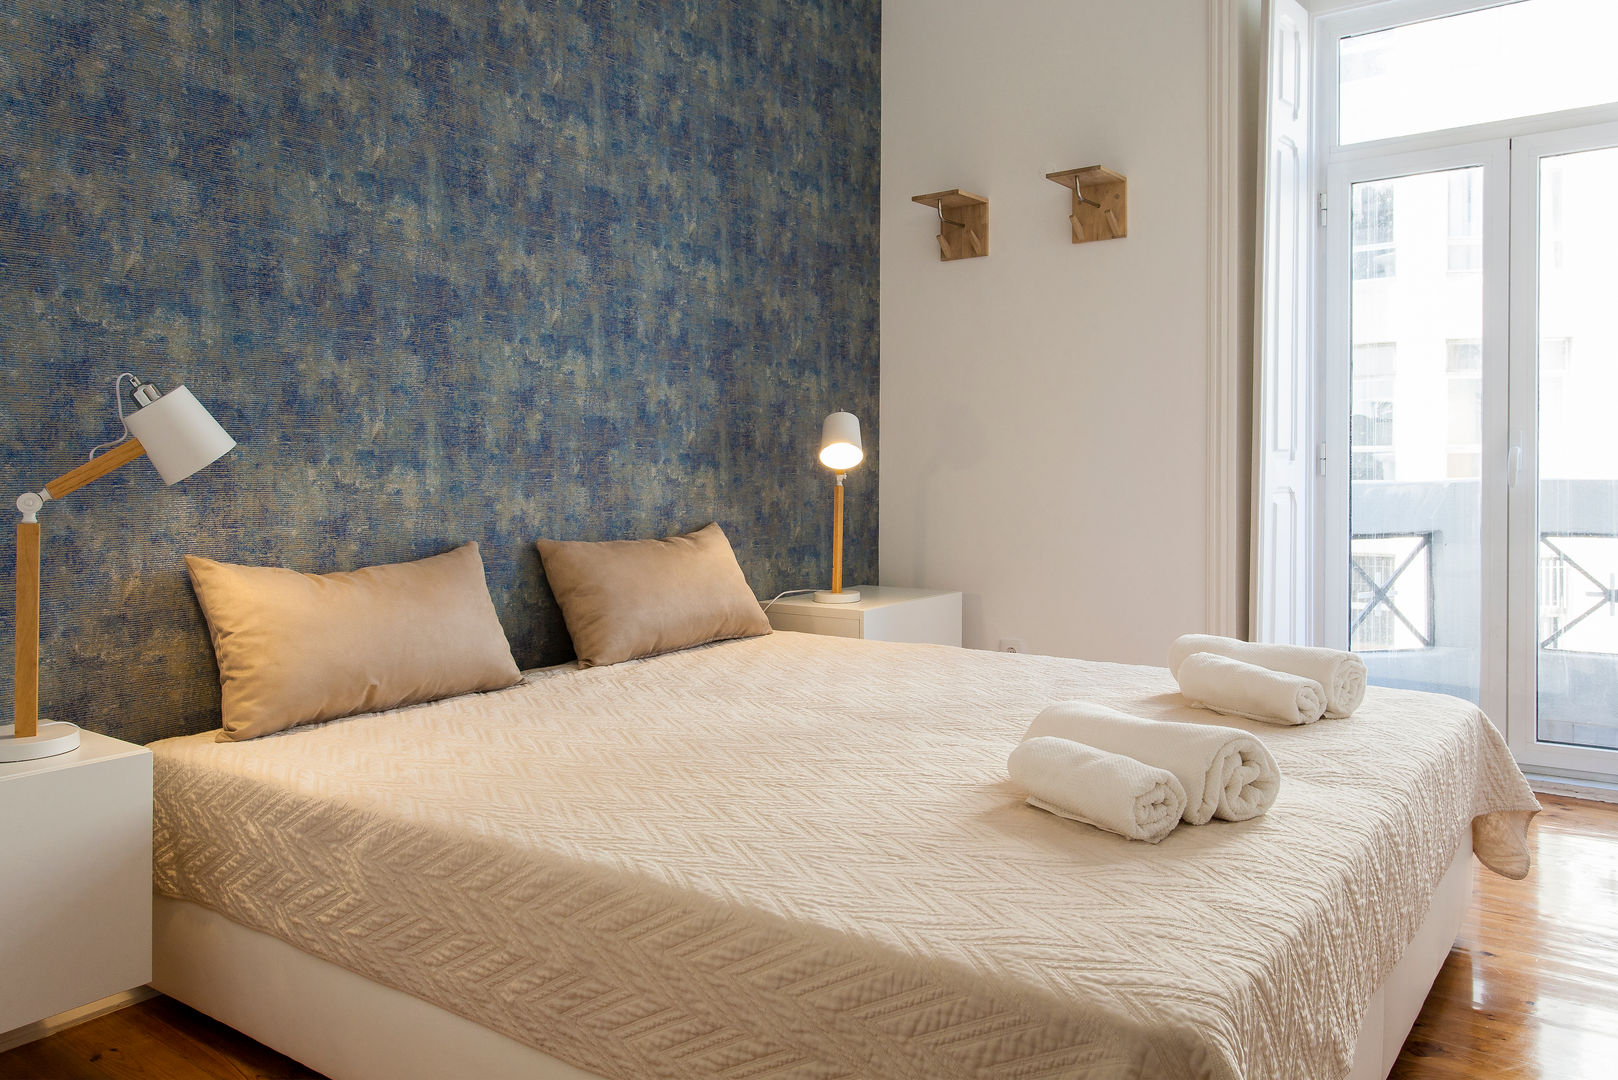 Apartamento de 2 quartos - Campolide, Lisboa, Traço Magenta - Design de Interiores Traço Magenta - Design de Interiores Modern style bedroom Accessories & decoration